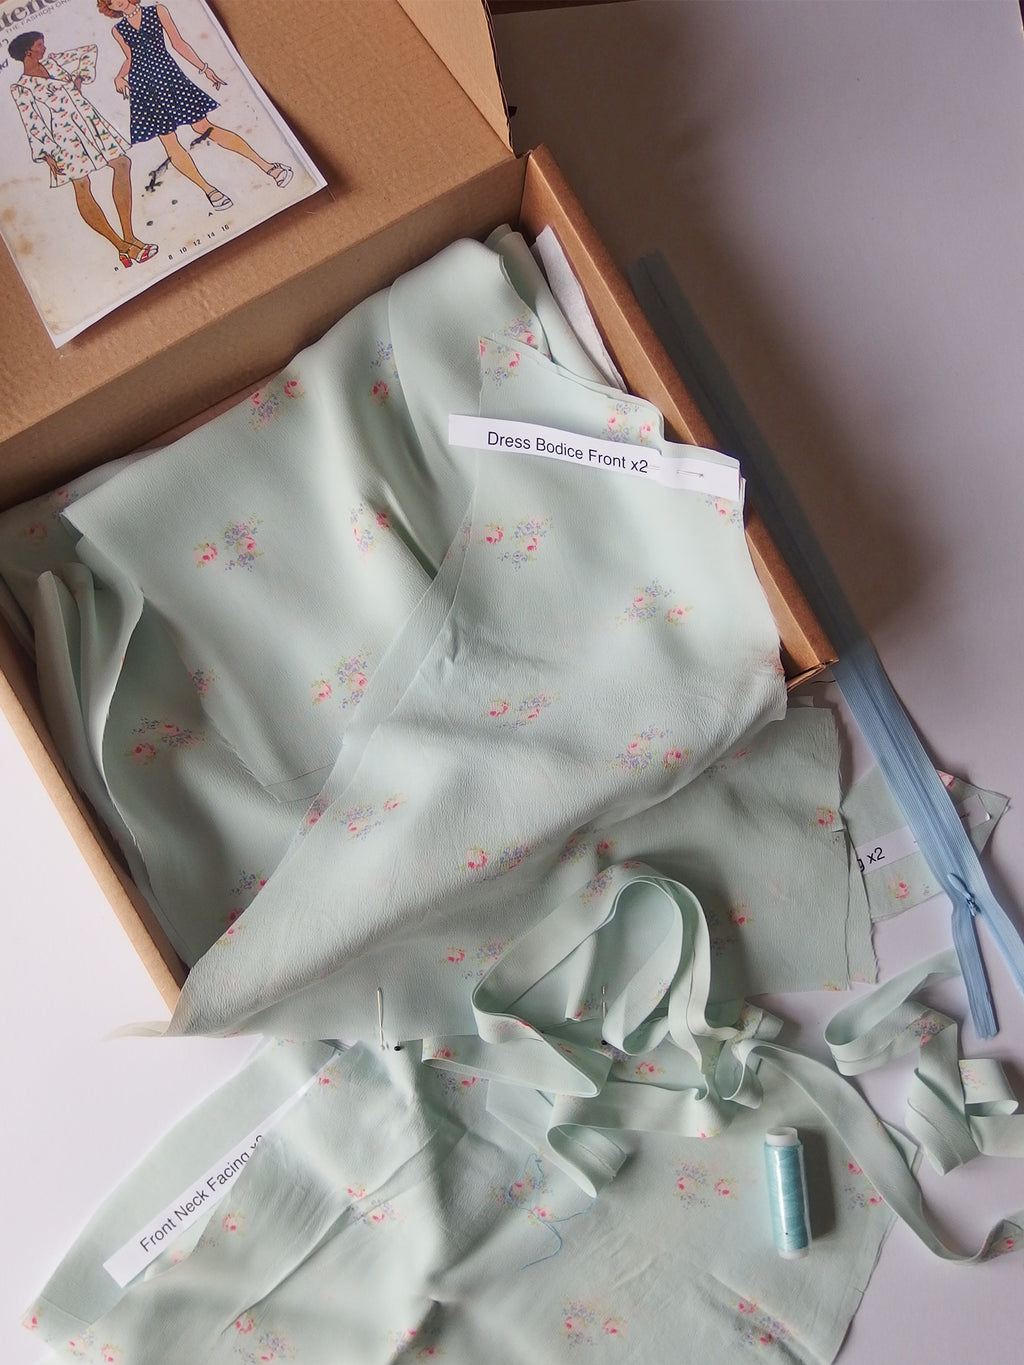 Vintage Dress-making Kit: Floral Dress